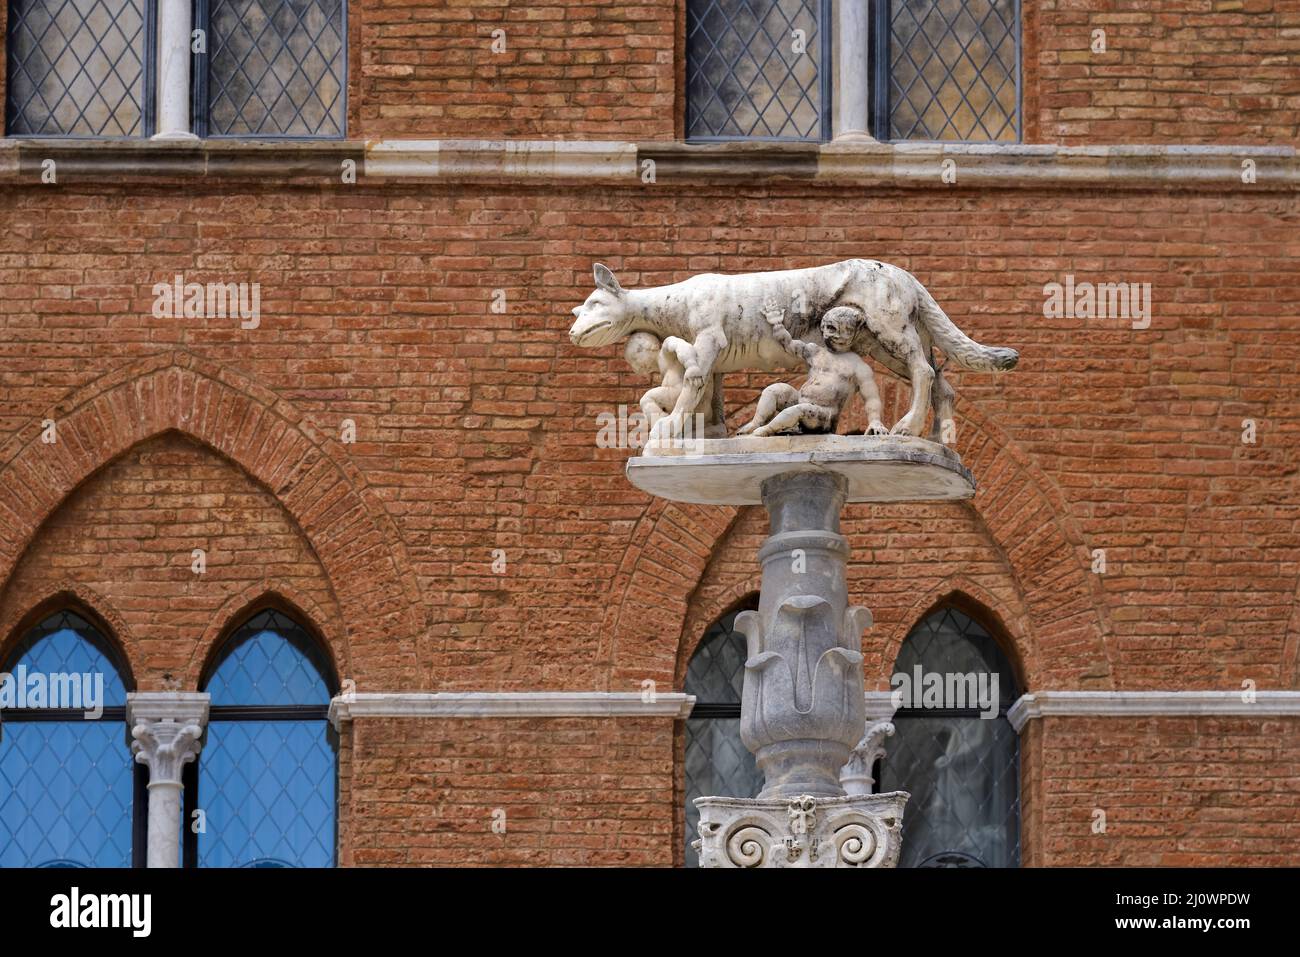 SIENA, TOSCANA, ITALIA - MAGGIO 18 : lupo con i bambini Romolo e Remo vicino alla Cattedrale di Siena, Toscana, Italia il 18 maggio Foto Stock